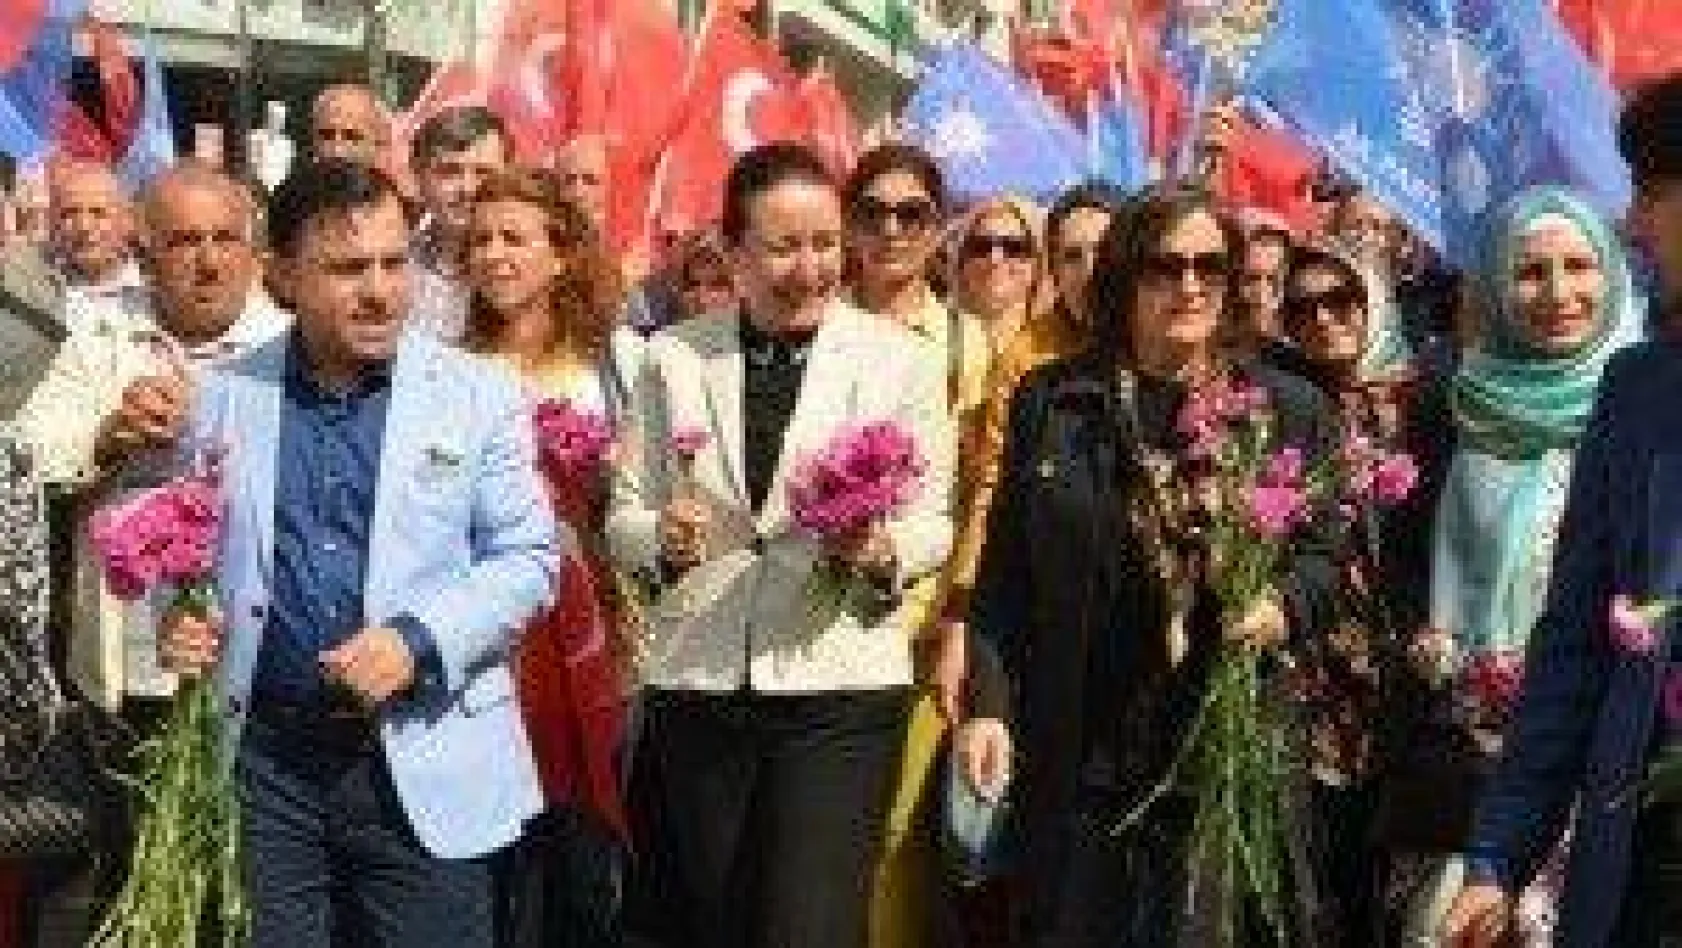 AK Parti 'Sevgi yürüyüşü' yaptı